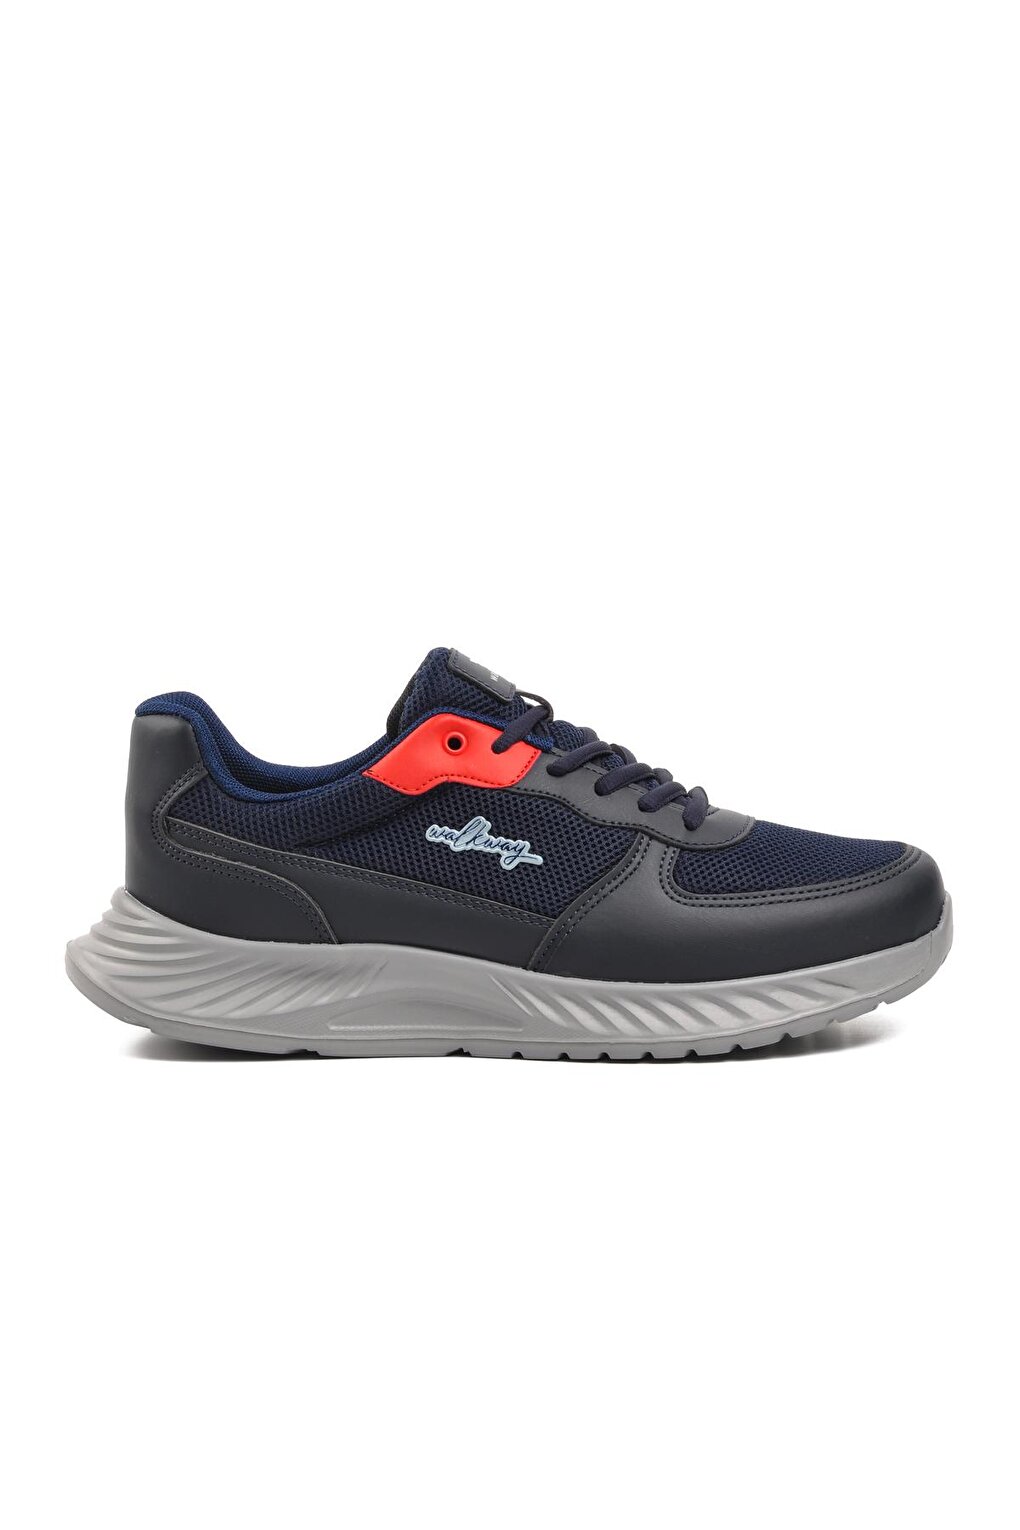 Мужская спортивная обувь большого размера Troyes темно-синего цвета Walkway